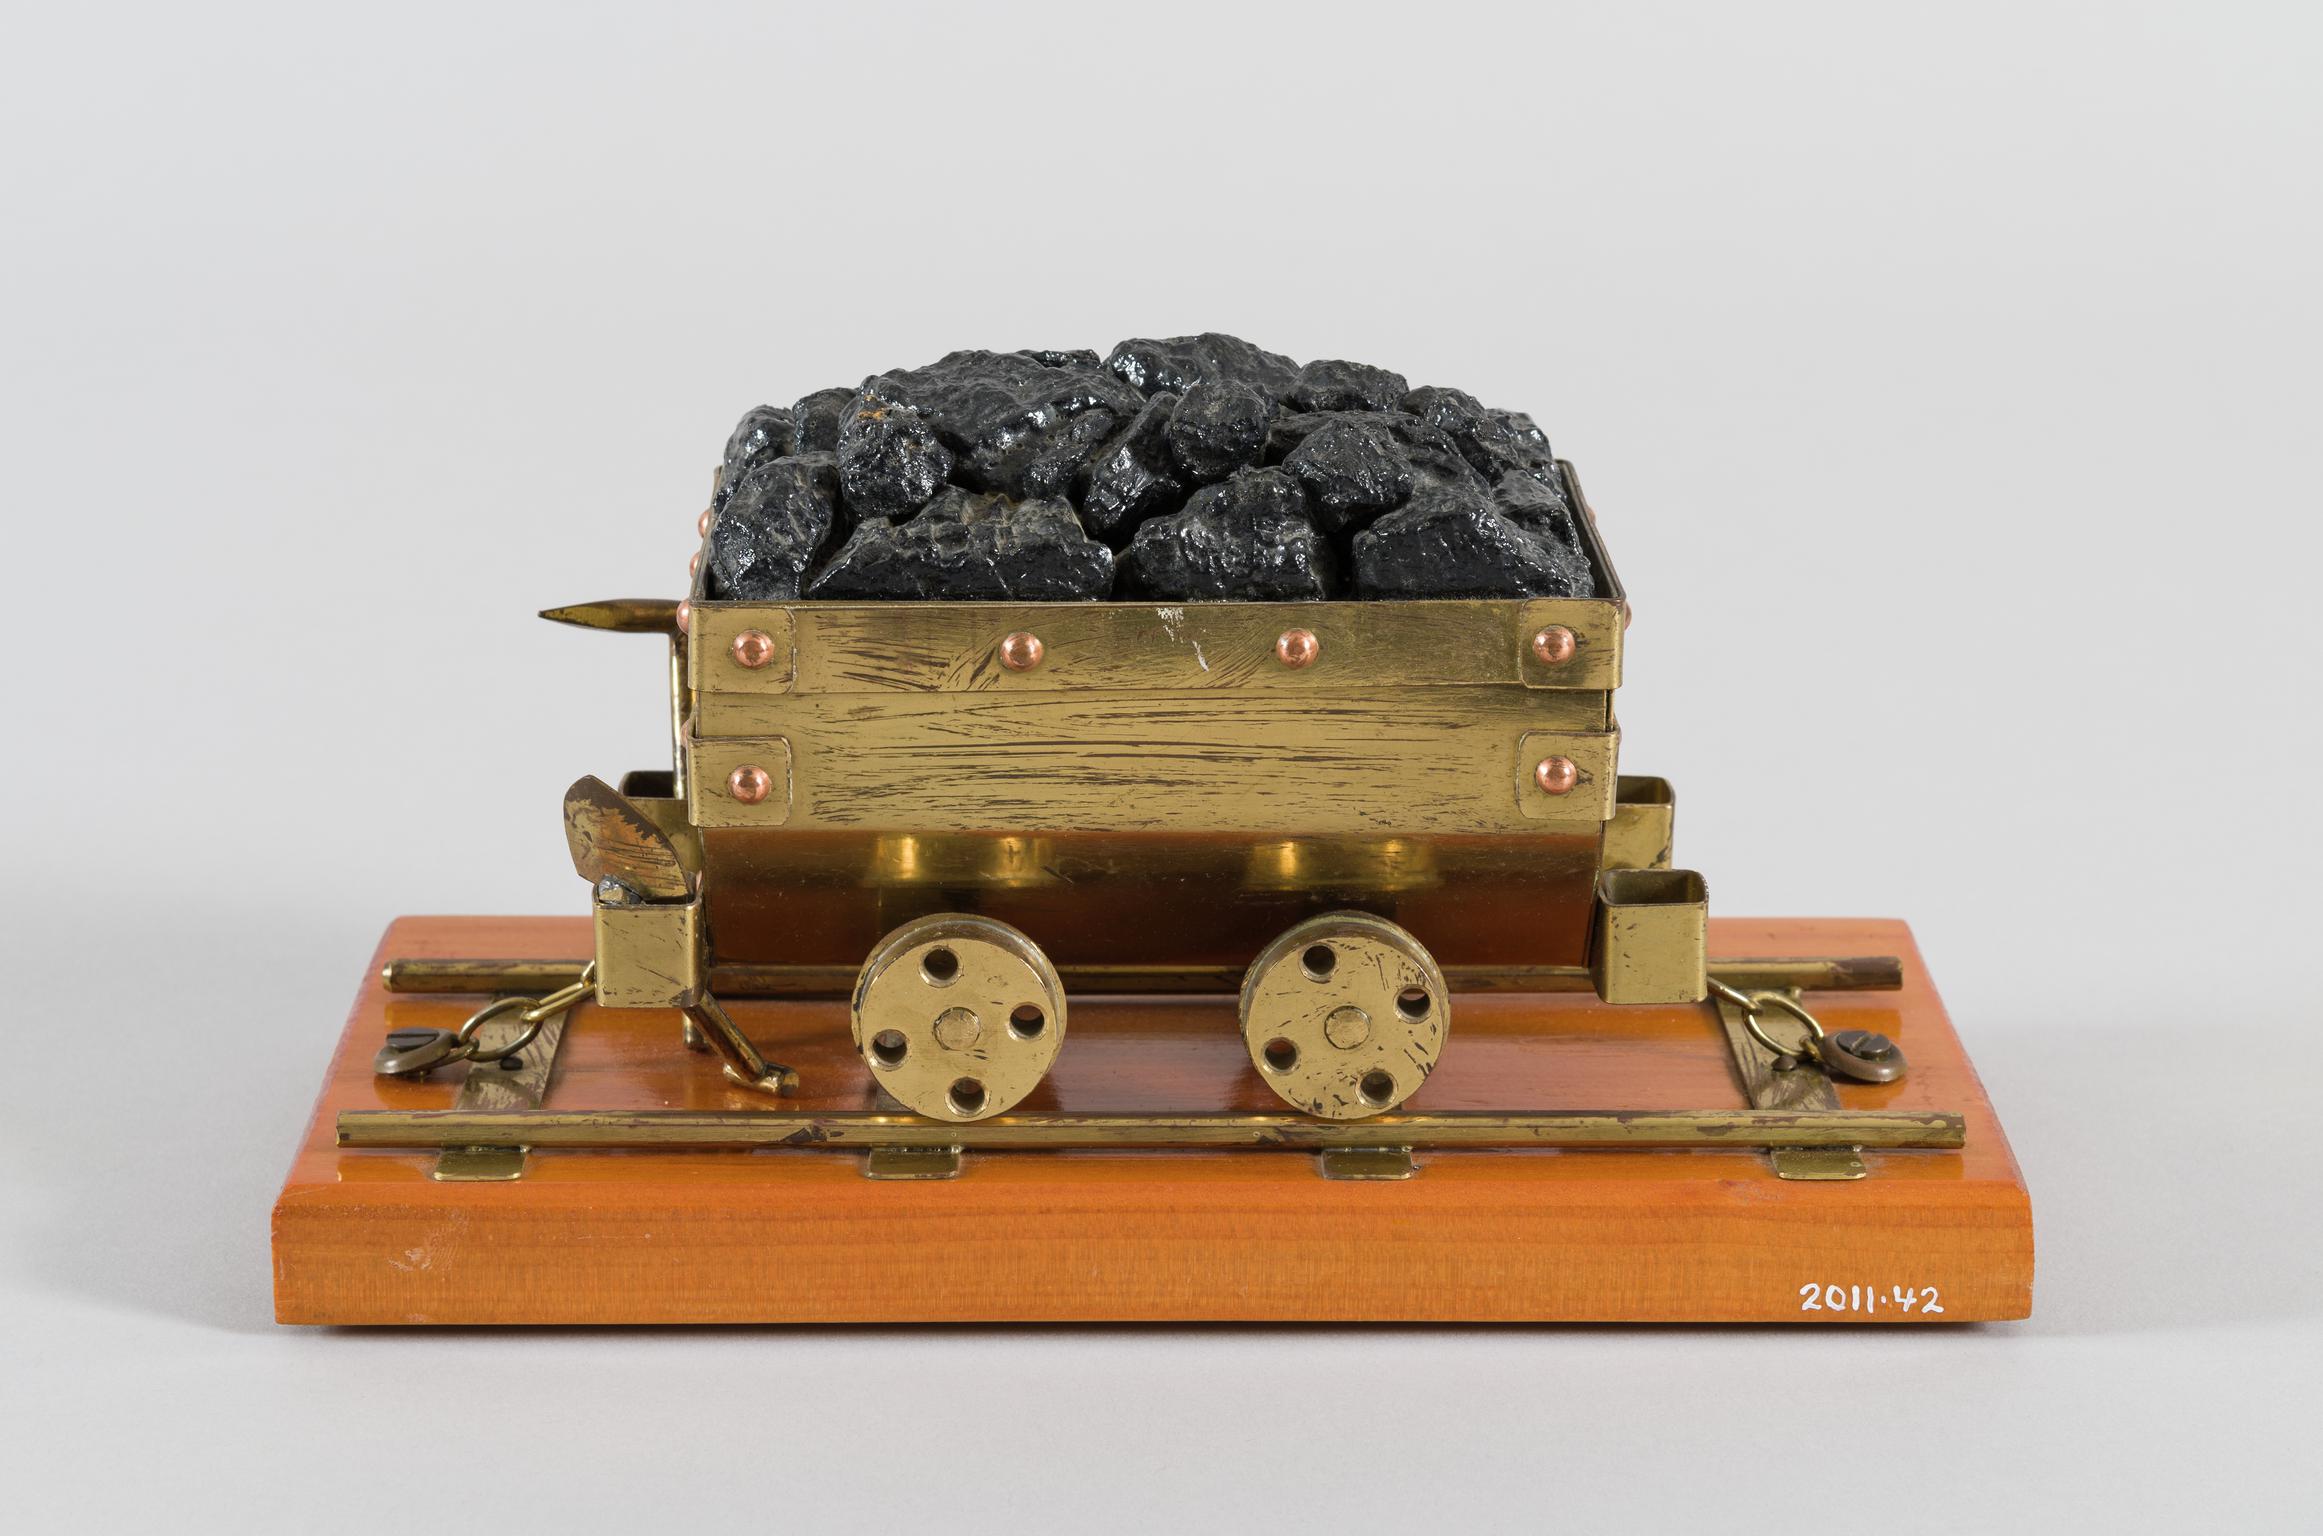 Coal tram model